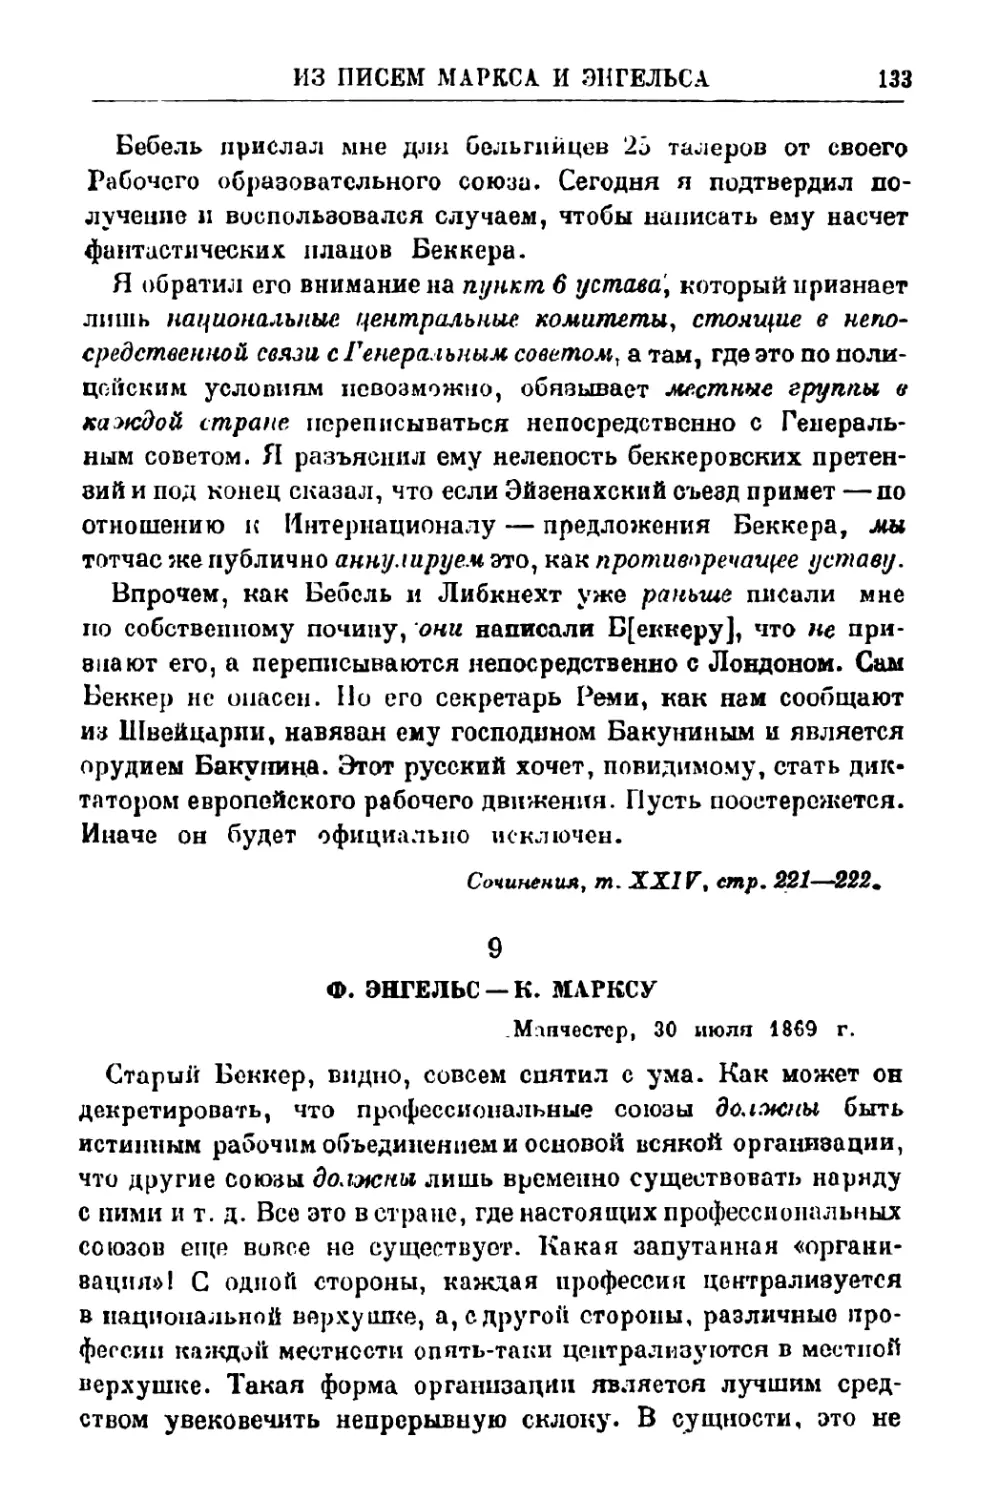 9. Ф. Энгельс — К. Марксу, 30 июля 1869 г